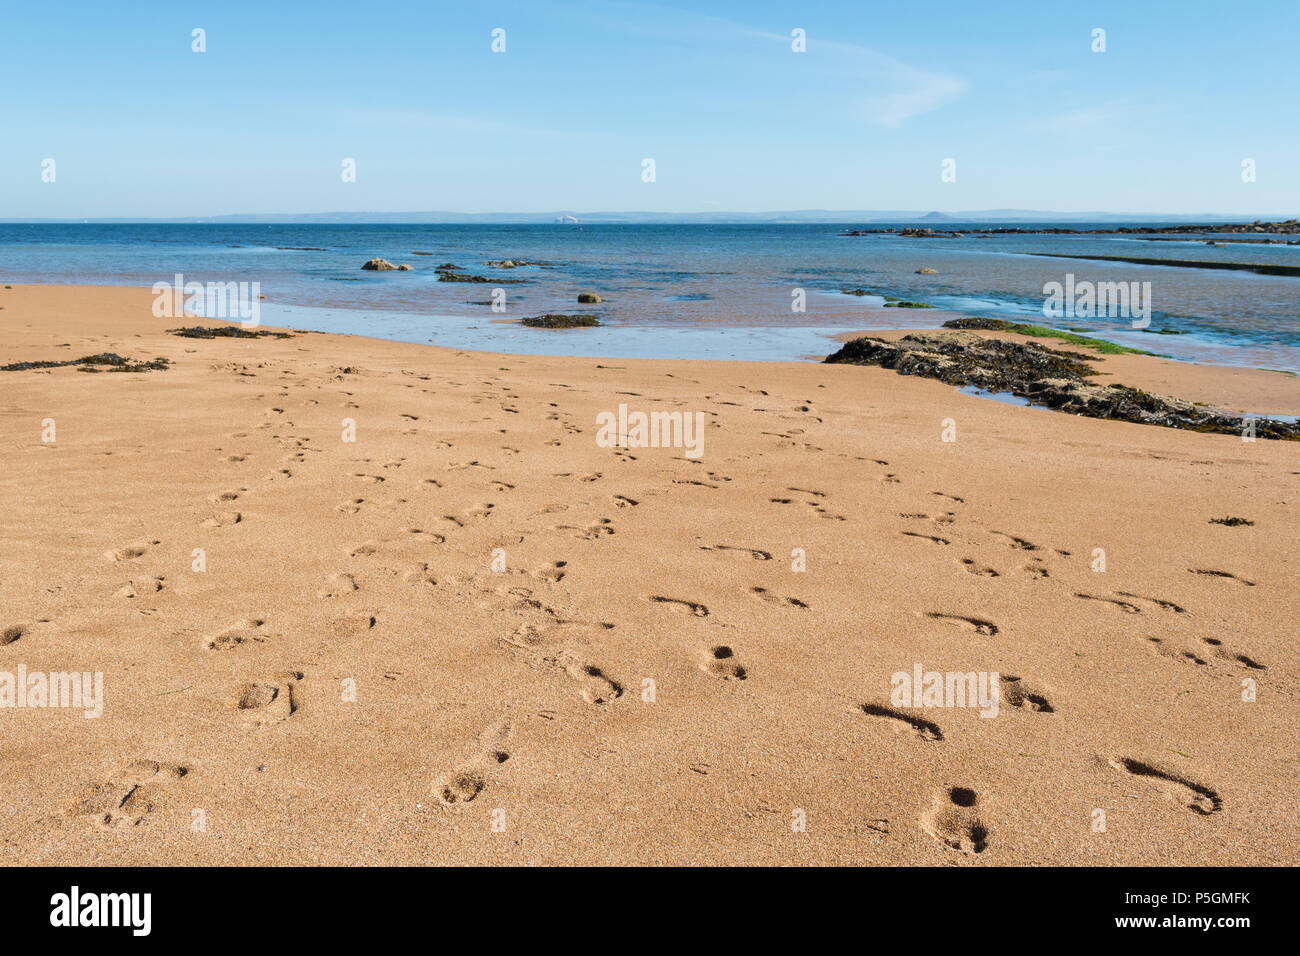 Un bon nombre d'empreintes de pas sur une plage écossaise - plage Anstruther, Fife, Scotland, UK Banque D'Images